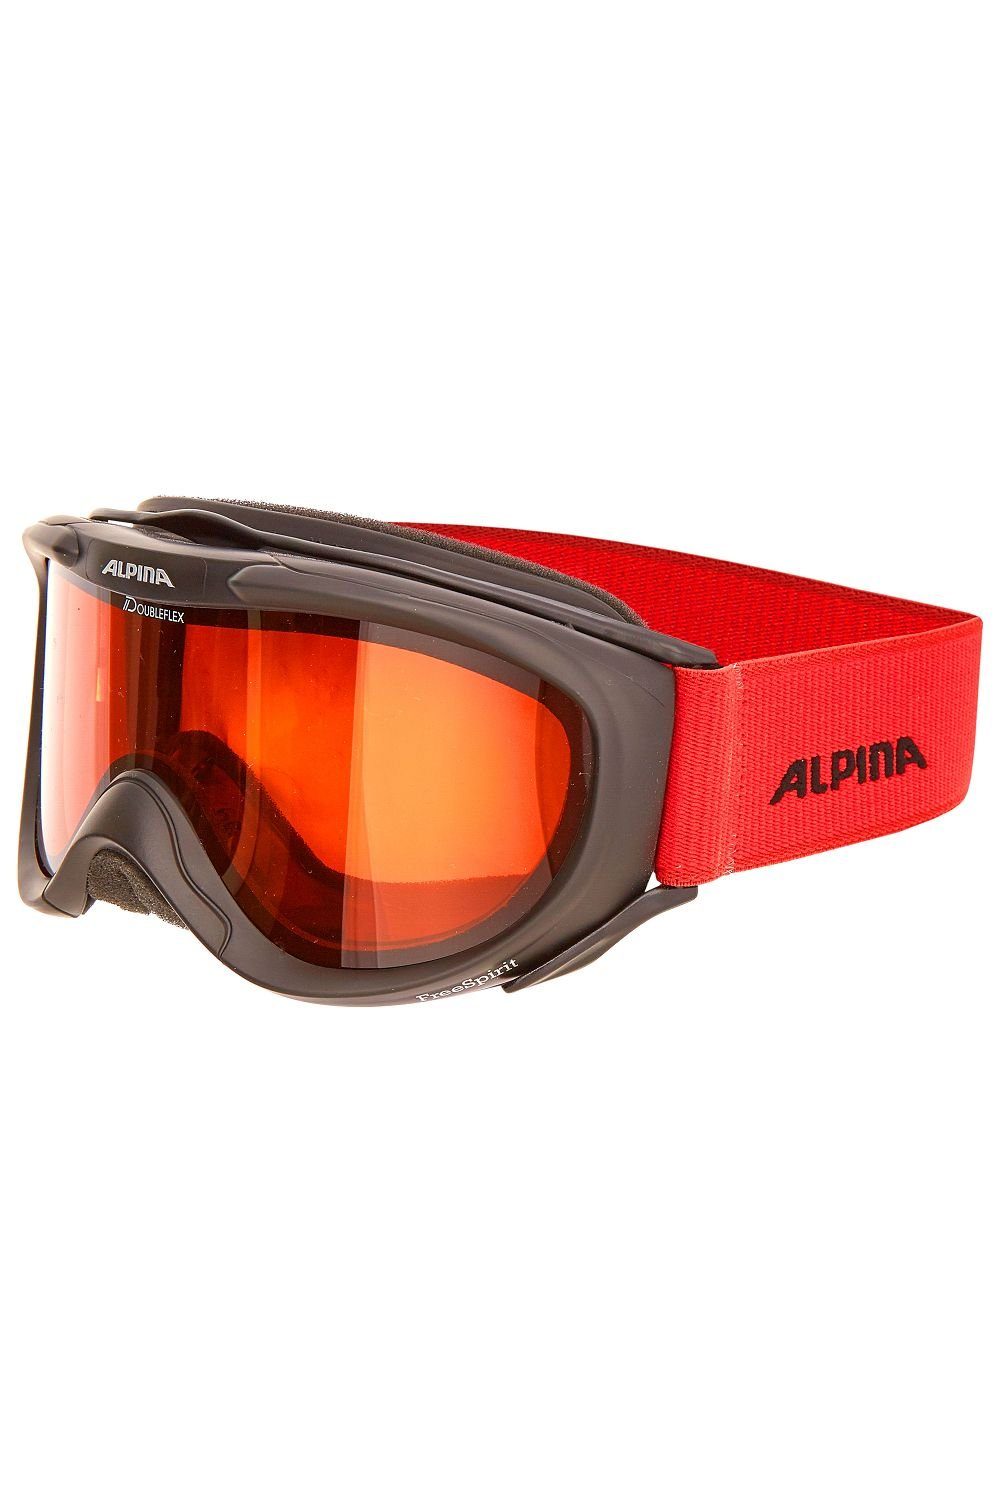 Alpina Sports Skibrille Alpina Skibrille FREESPIRIT DH onesize schwarz/rot